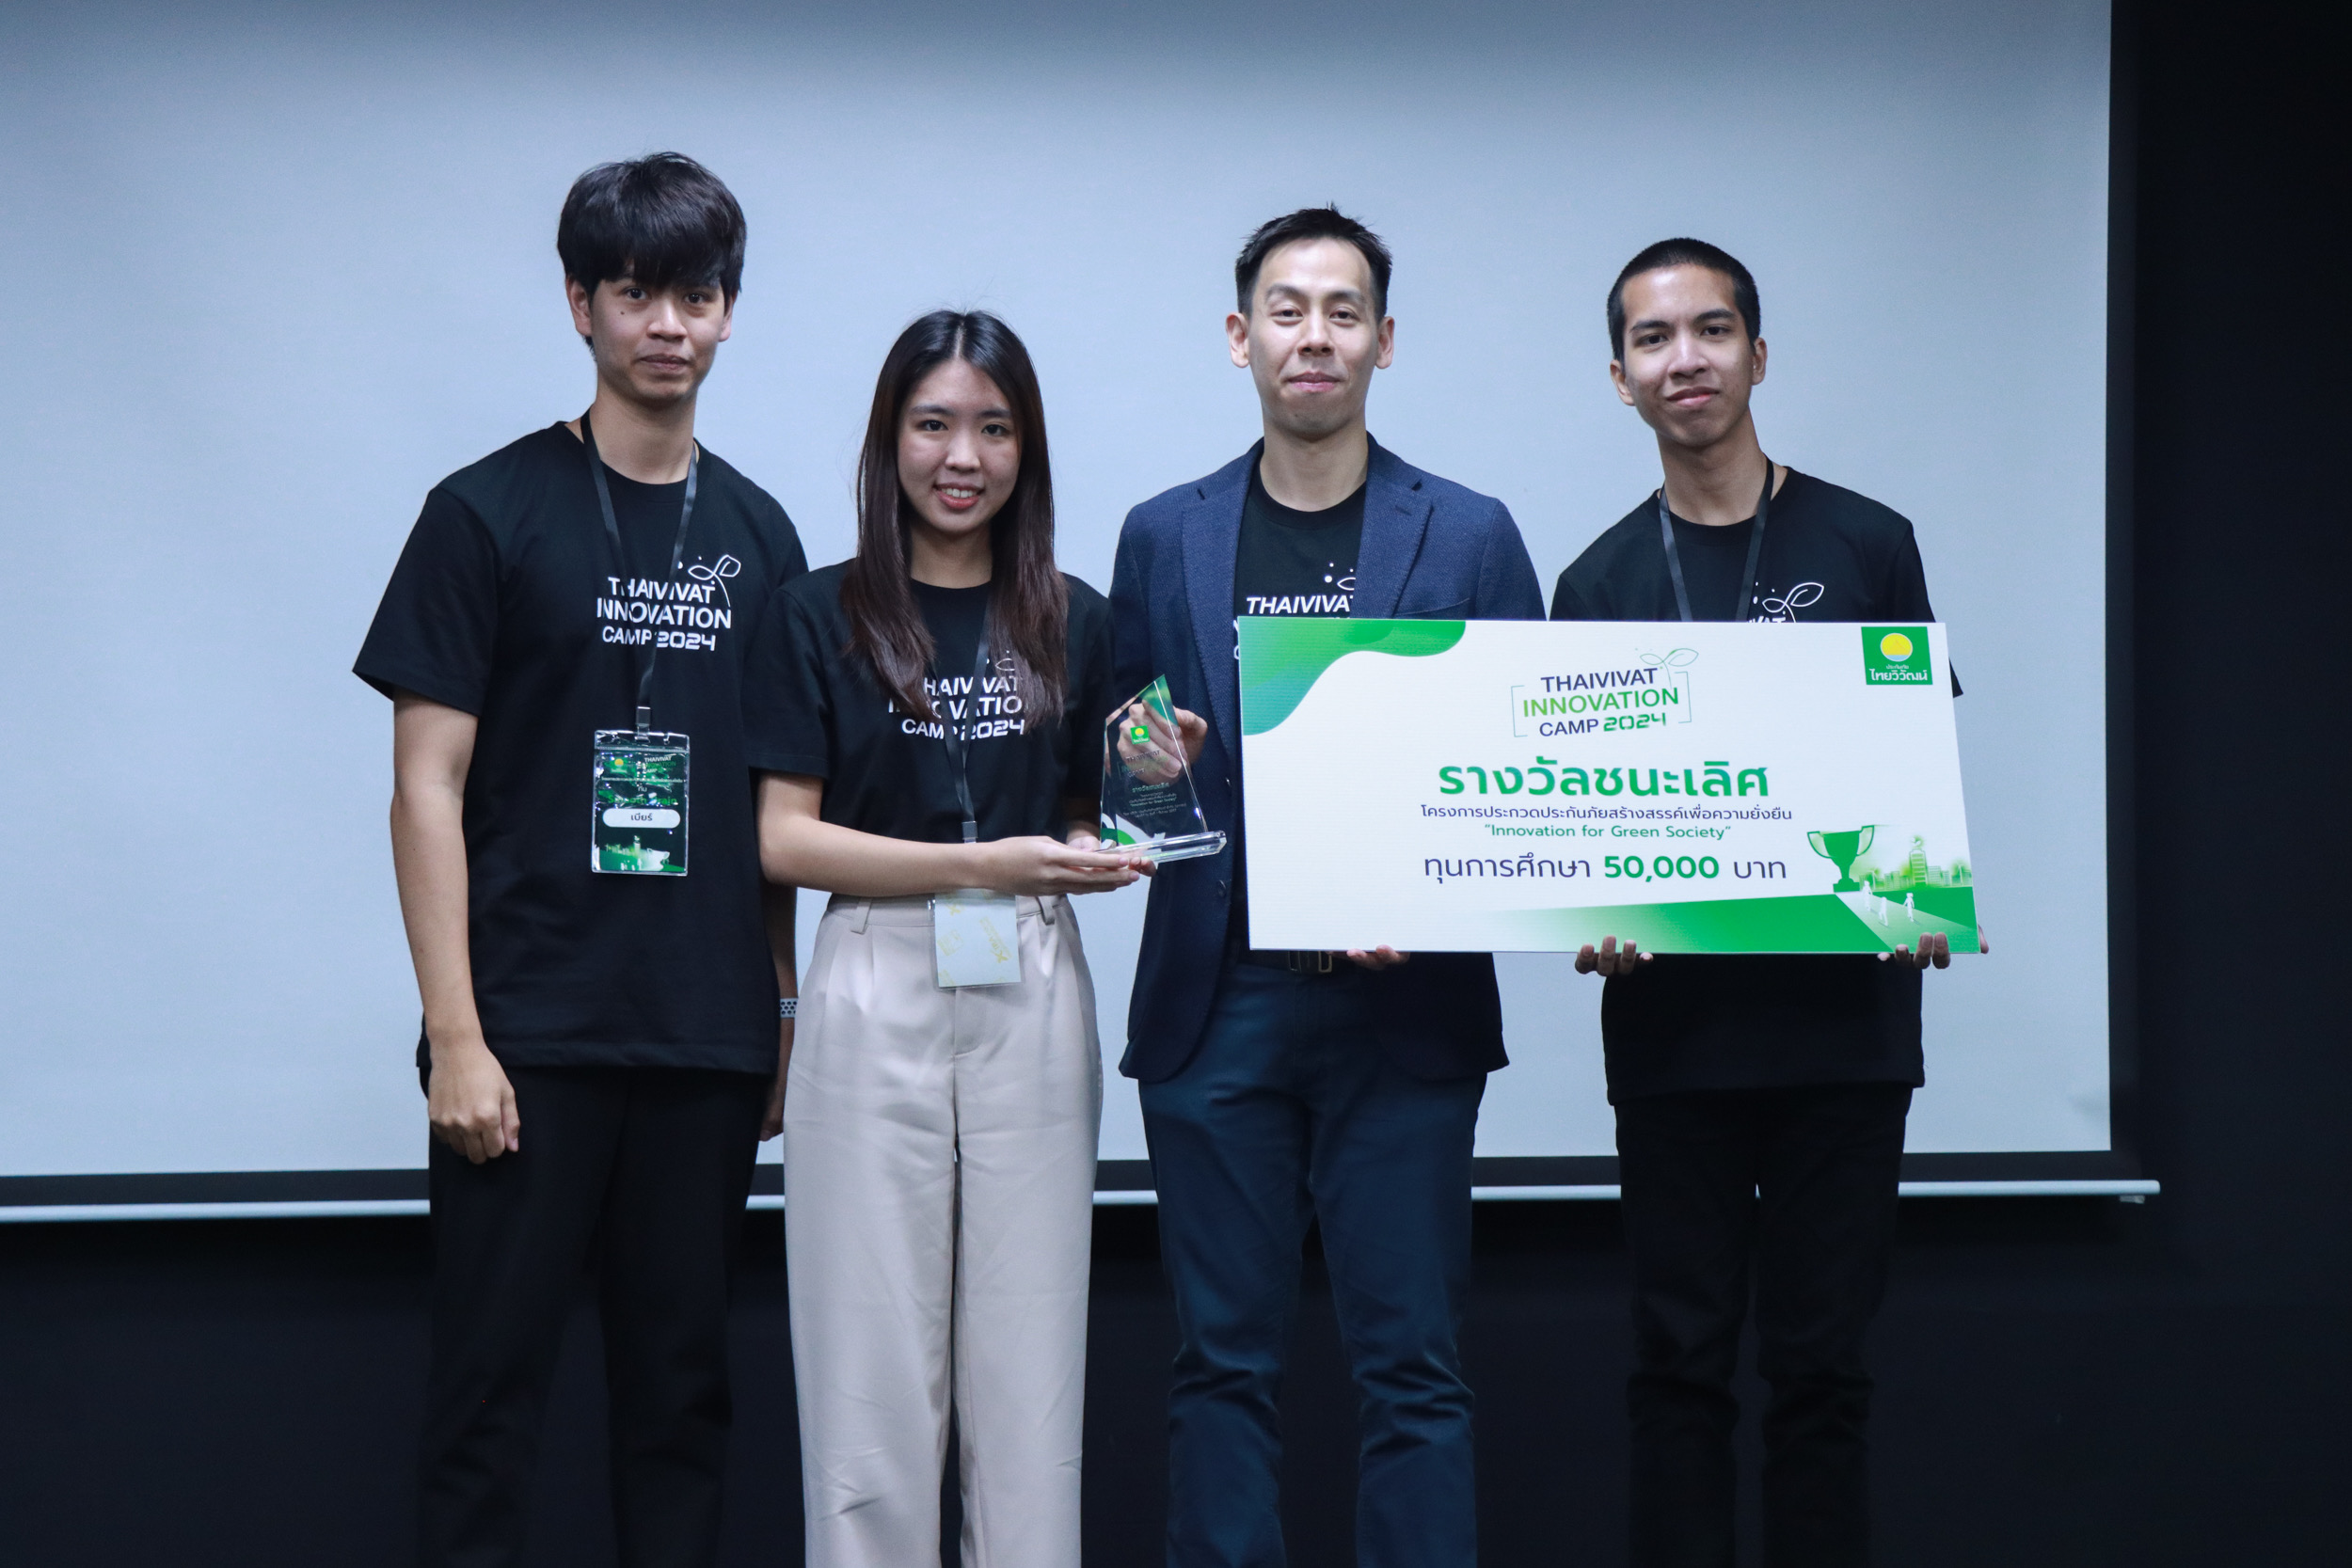 ประกันภัยไทยวิวัฒน์ เปิดค่าย Thaivivat Innovation Camp 2024 ผลักดันเยาวชนค้นหาไอเดียประกันภัยและจัดการความเสี่ยงด้วยนวัตกรรมประกันภัยเพื่อความยั่งยืน